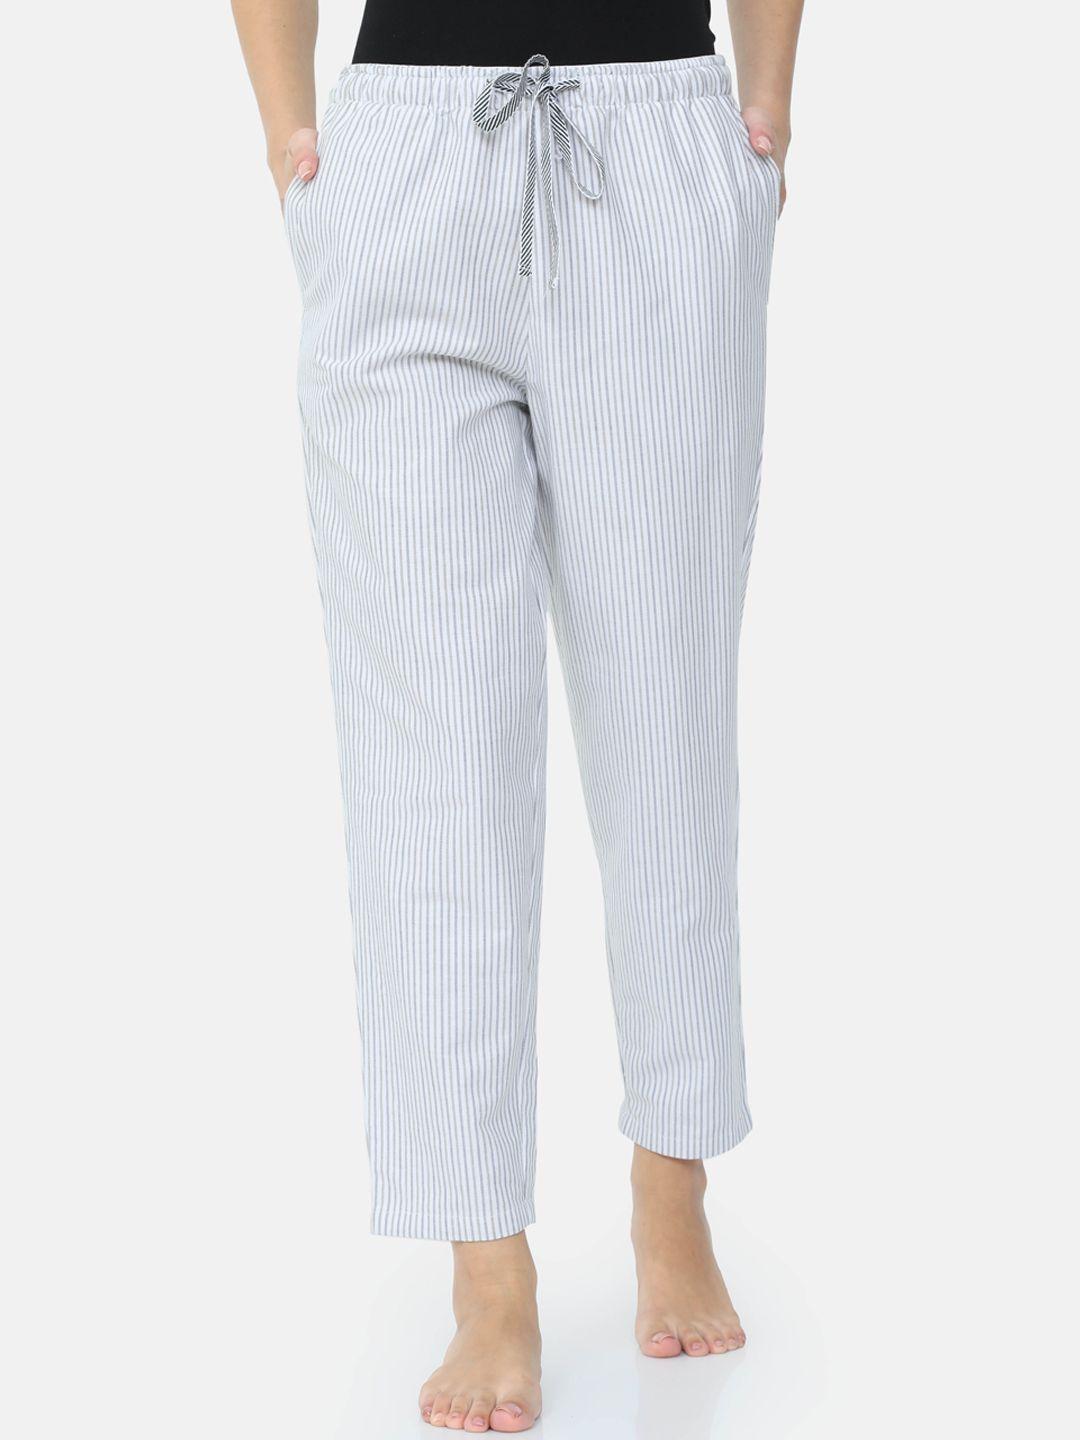 bareblow women grey striped lounge pants